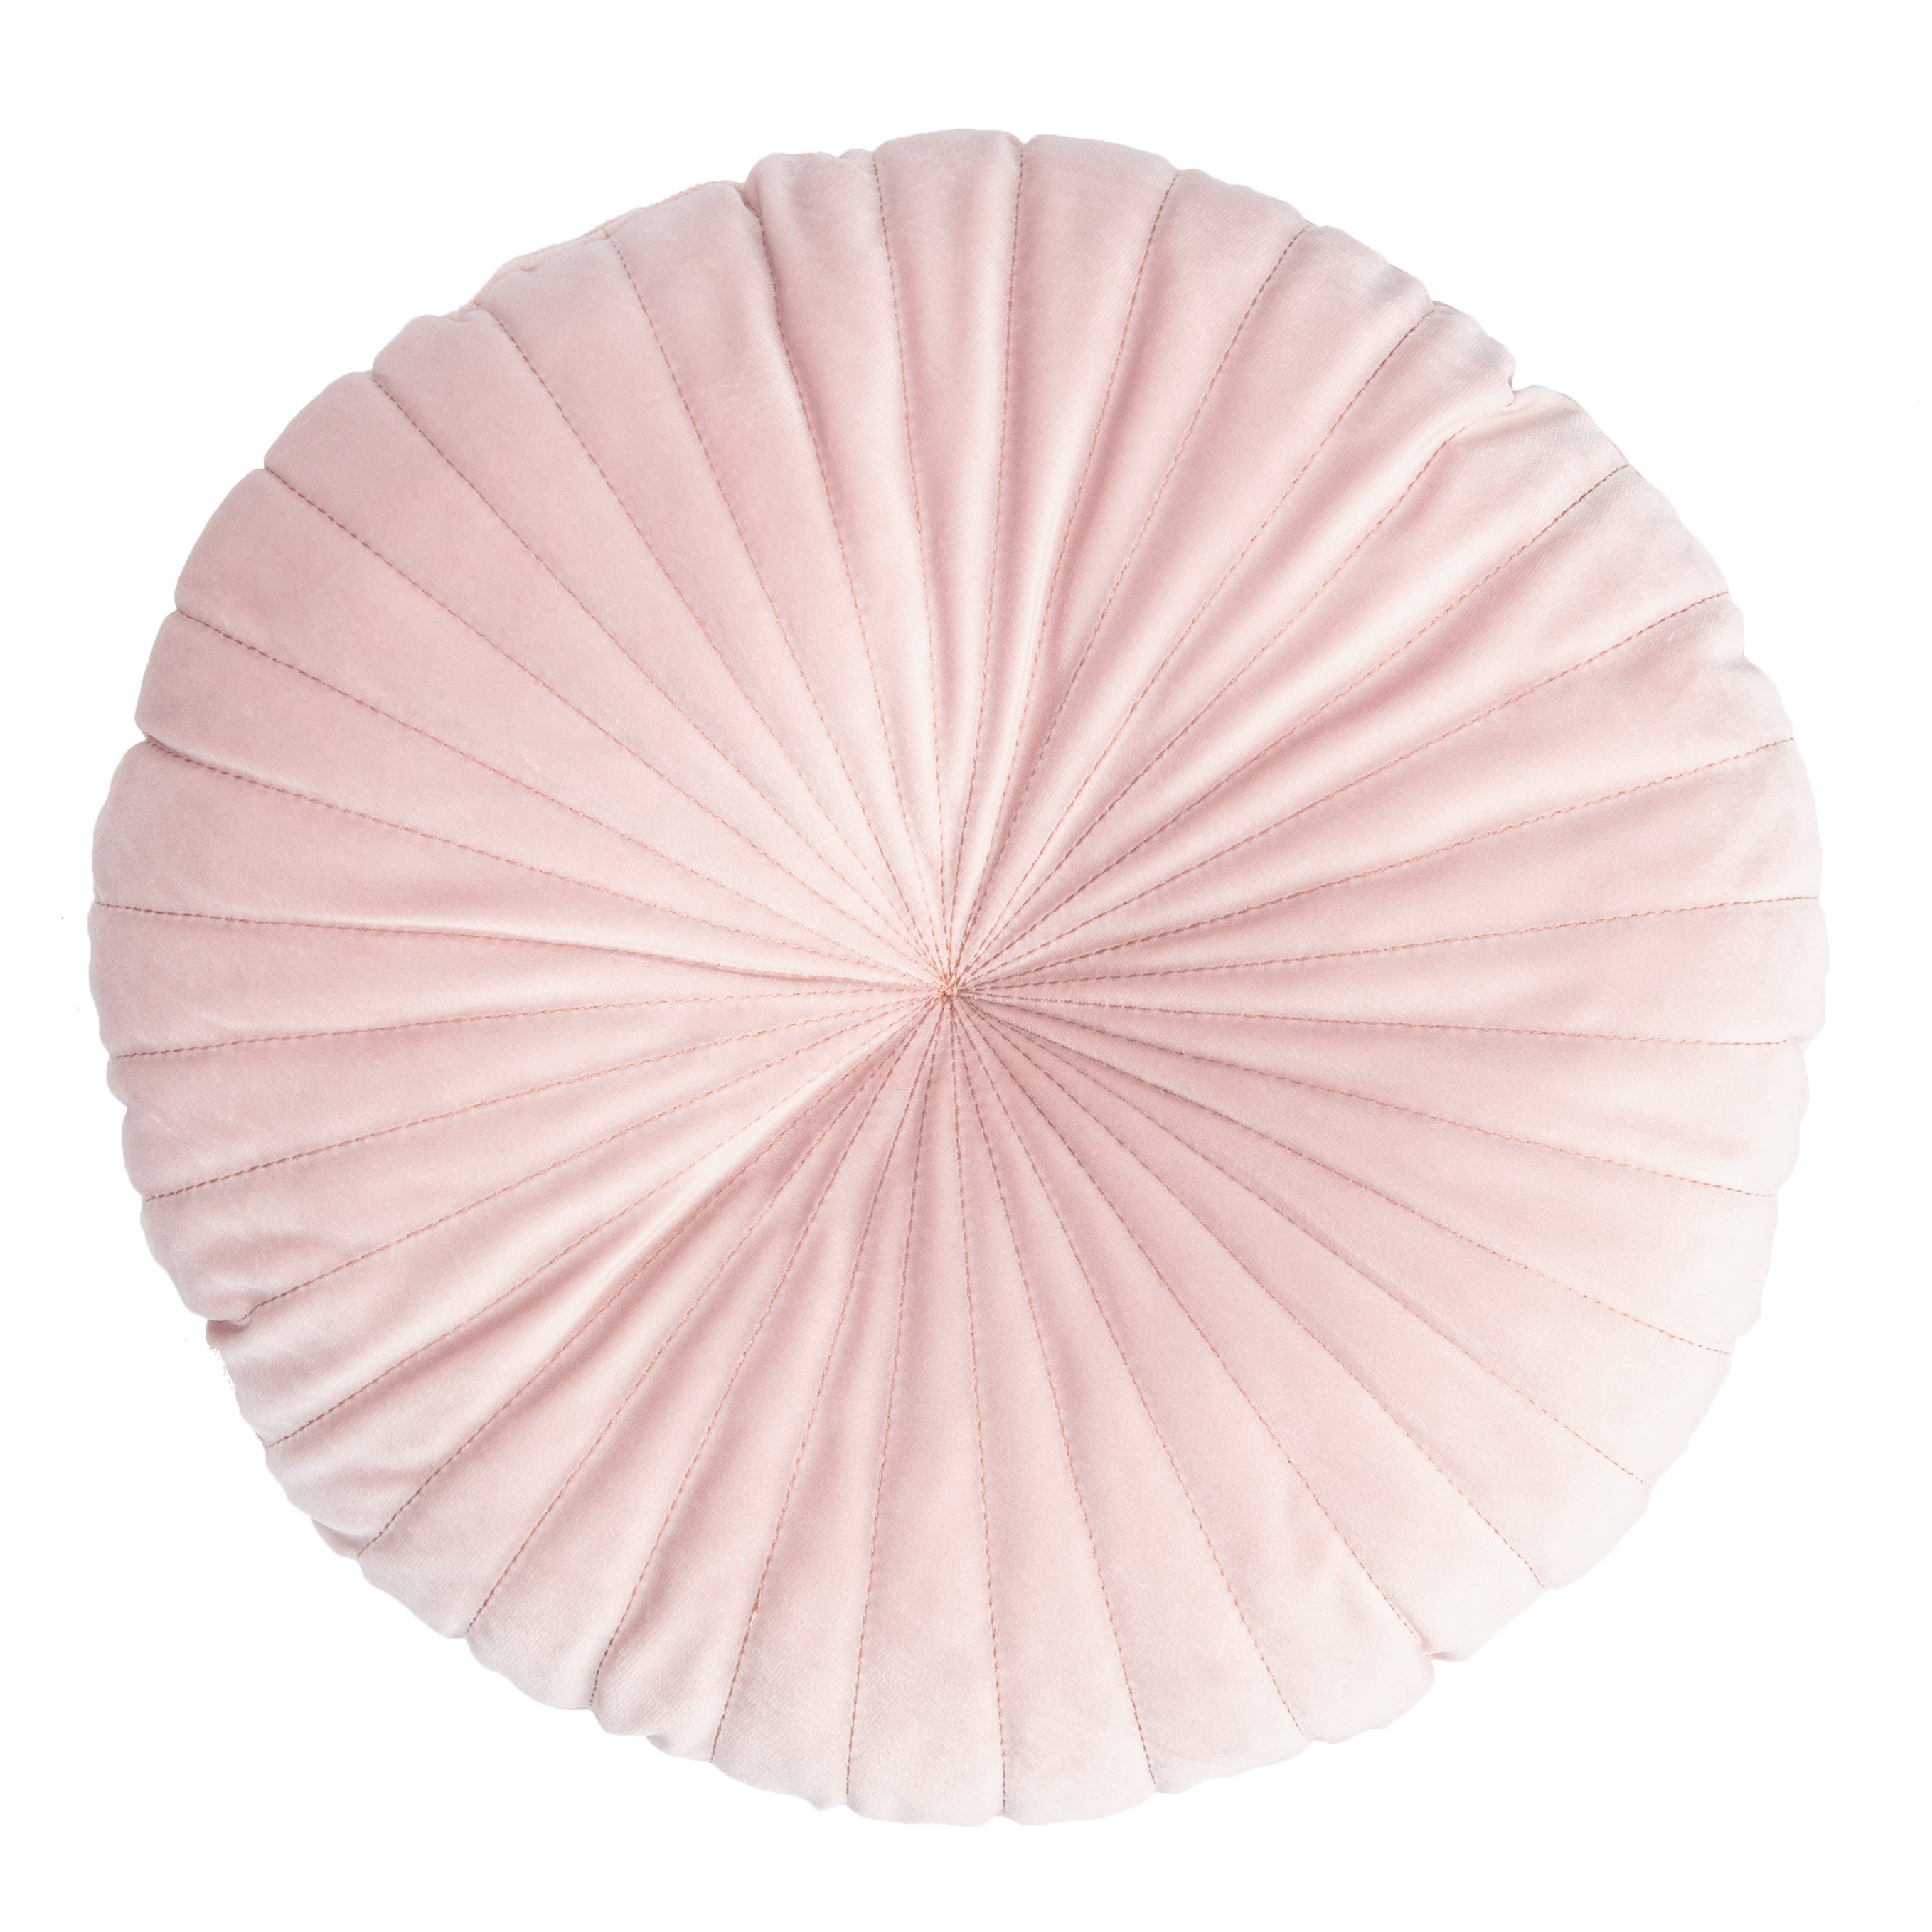 Tenda filtrante Liling rosa fettuccia con passanti nascosti 140x280 cm